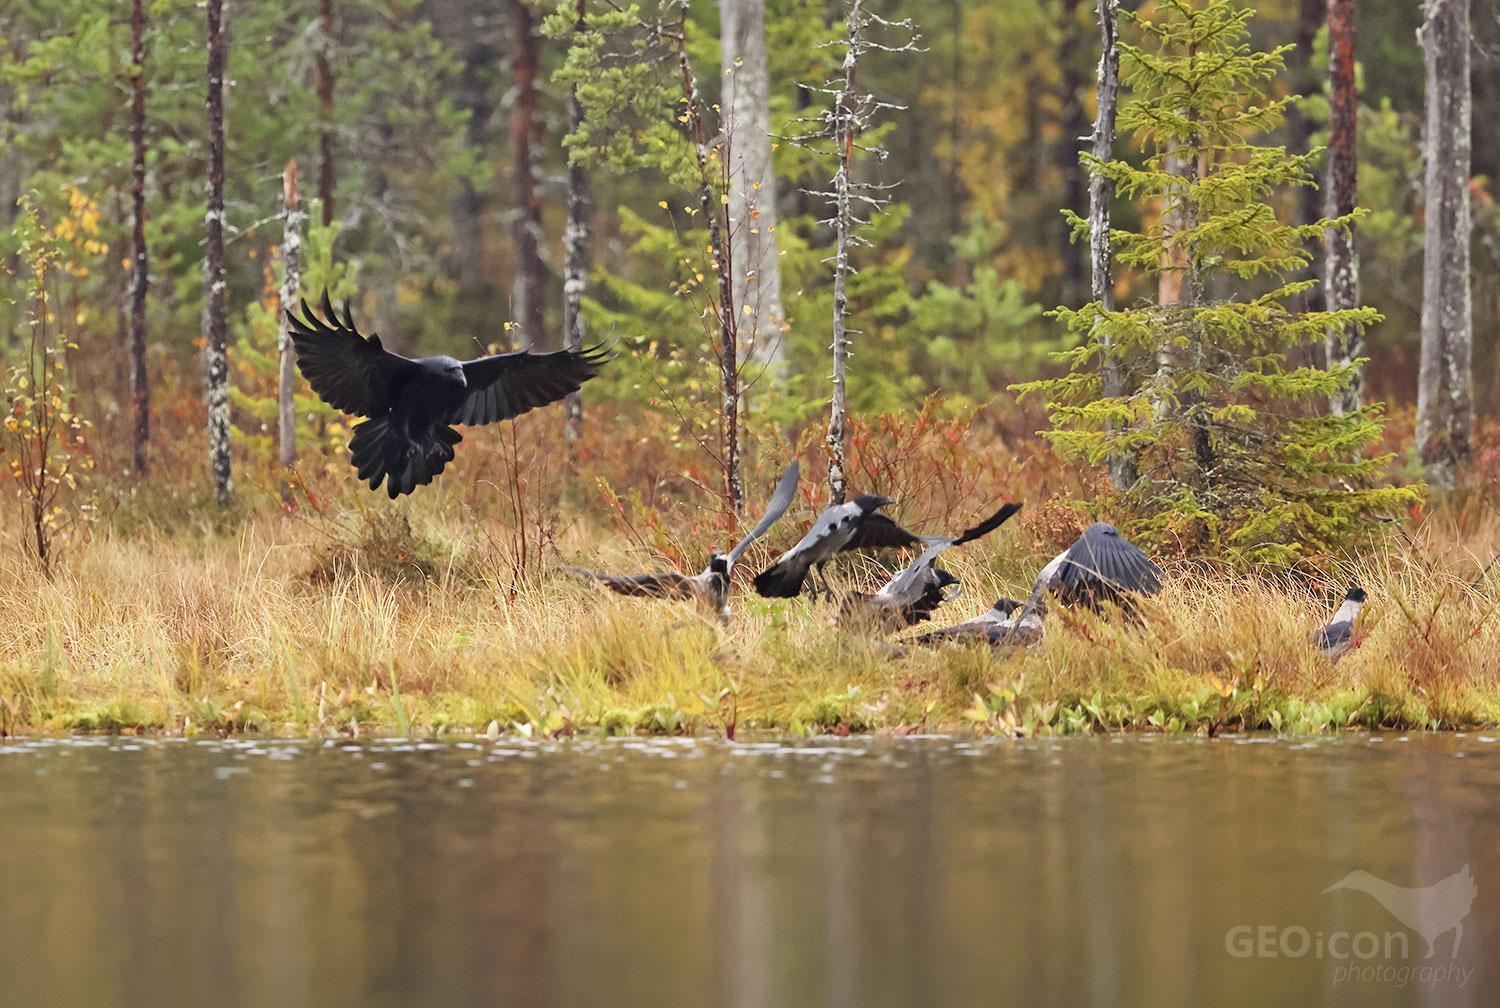 Ravens / krkavec velký (Corvus corax)